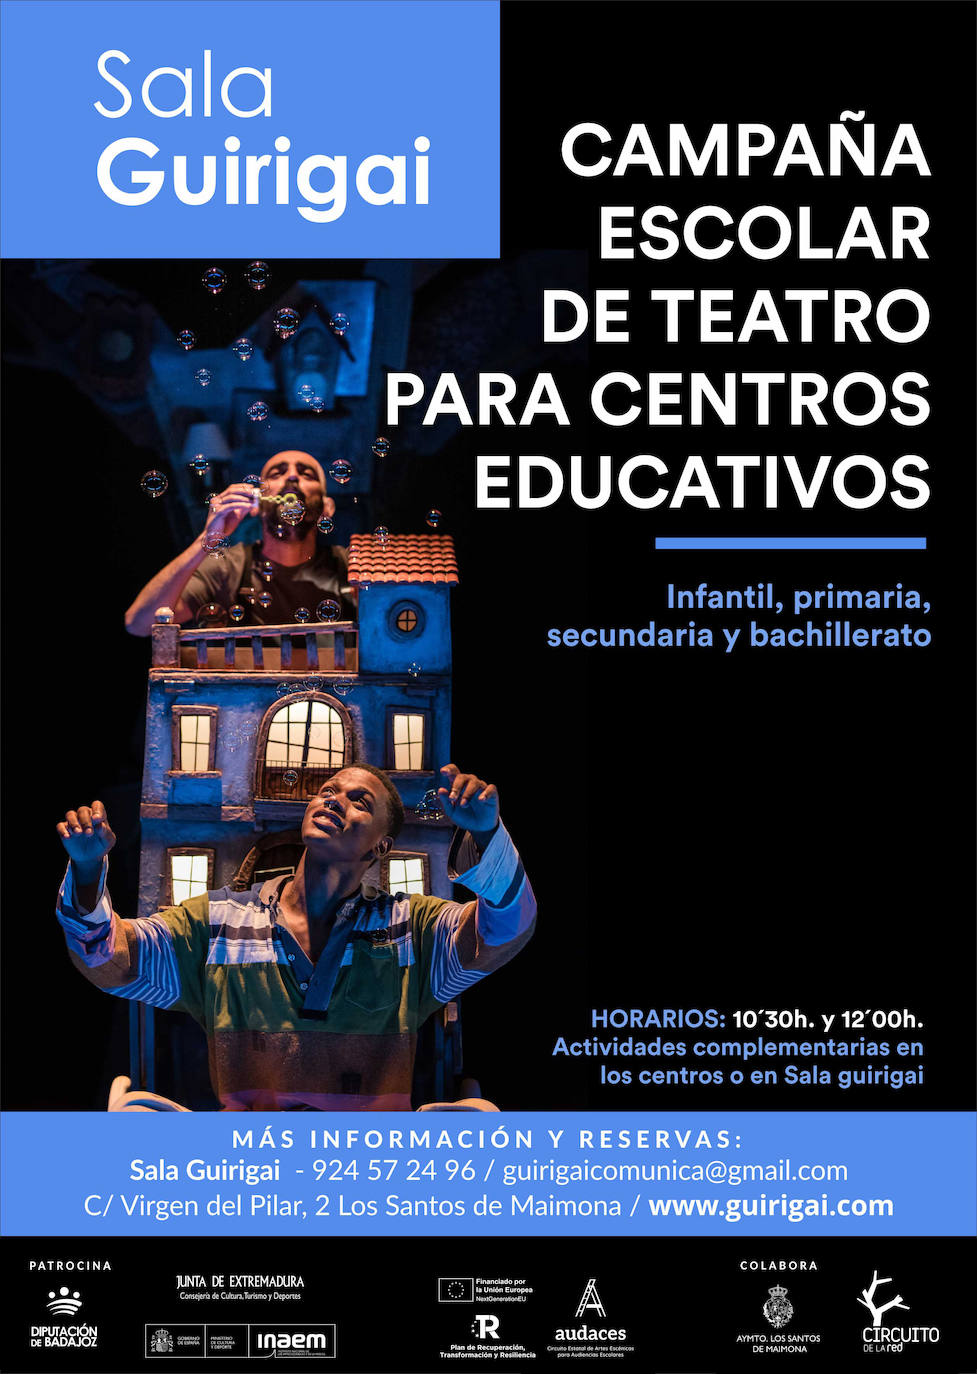 La Campaña Escolar Teatral de Sala Guirigai se desarrolla con éxito